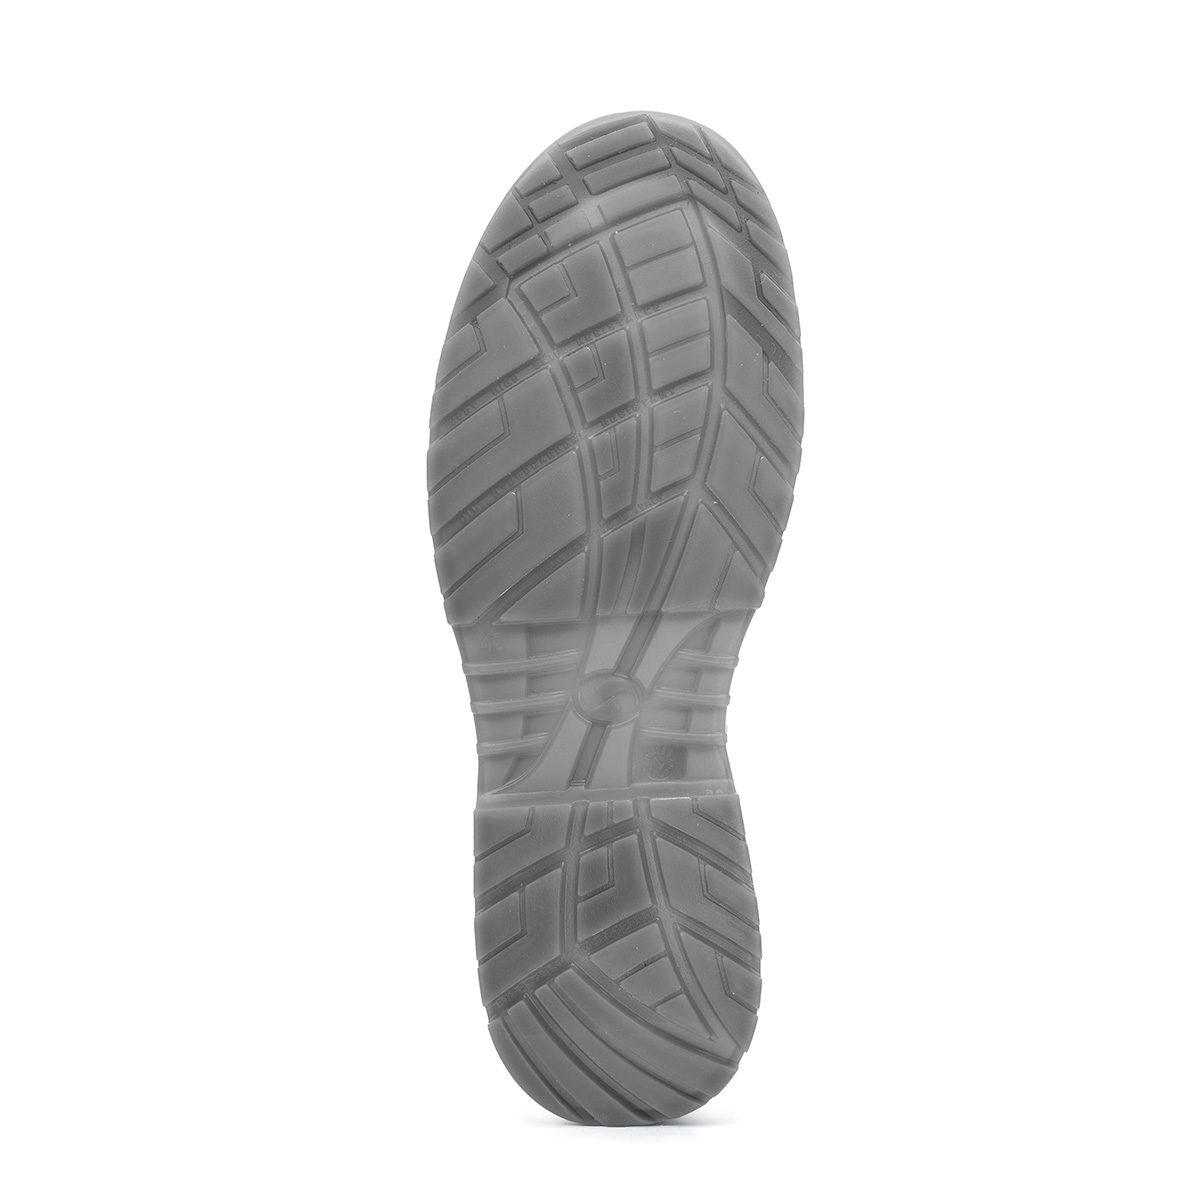 Crystal VENEZIA - Safety modello SRC - Codice Sixton Low con di S2 Peak classe Shoes *CI Shoe 86203-00 protezione